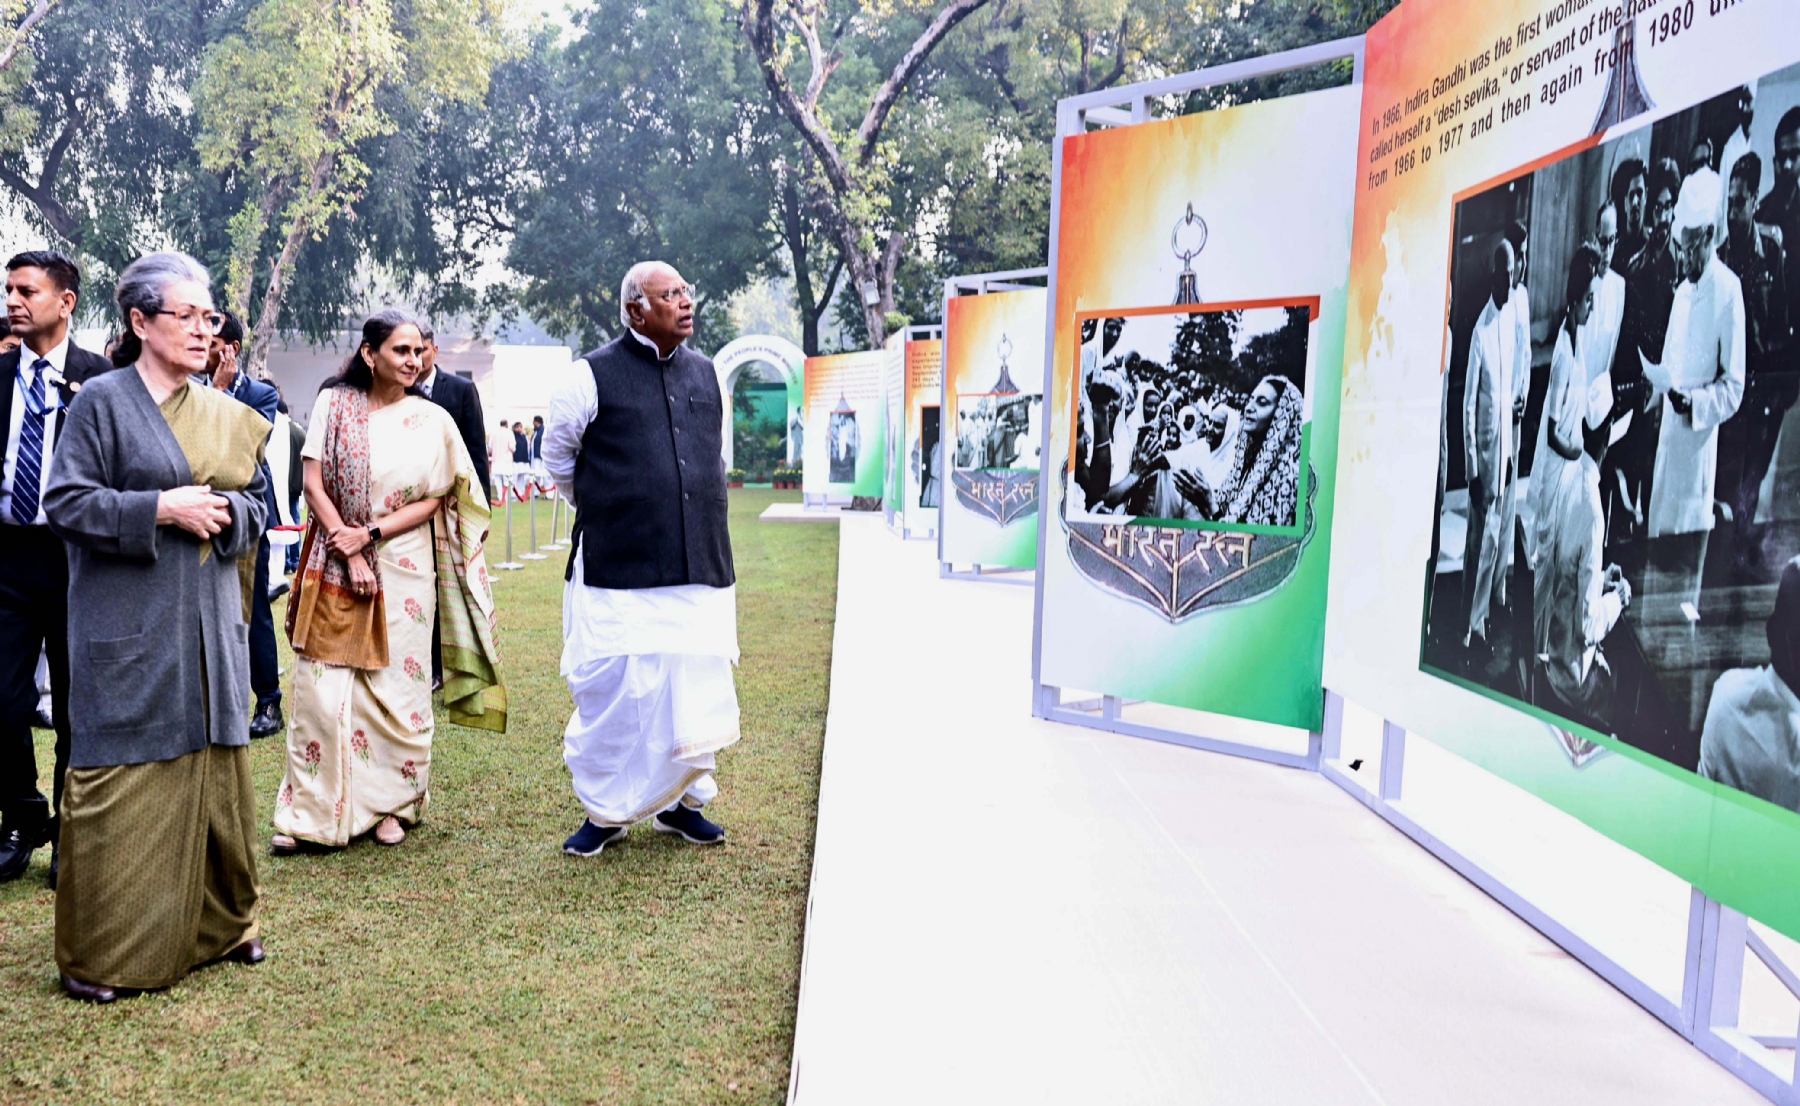 नई दिल्ली में रविवार 19 नवंबर को पूर्व प्रधानमंत्री इंदिरा गांधी की जयंती पर लगाई गई प्रदर्शनी का अवलोकन करते कांग्रेस अध्यक्ष मल्लिकार्जुन खड़गे और पूर्व अध्यक्ष सोनिया गांधी। हिन्दुस्थान समाचार/ फोटो गणेश बिष्ट